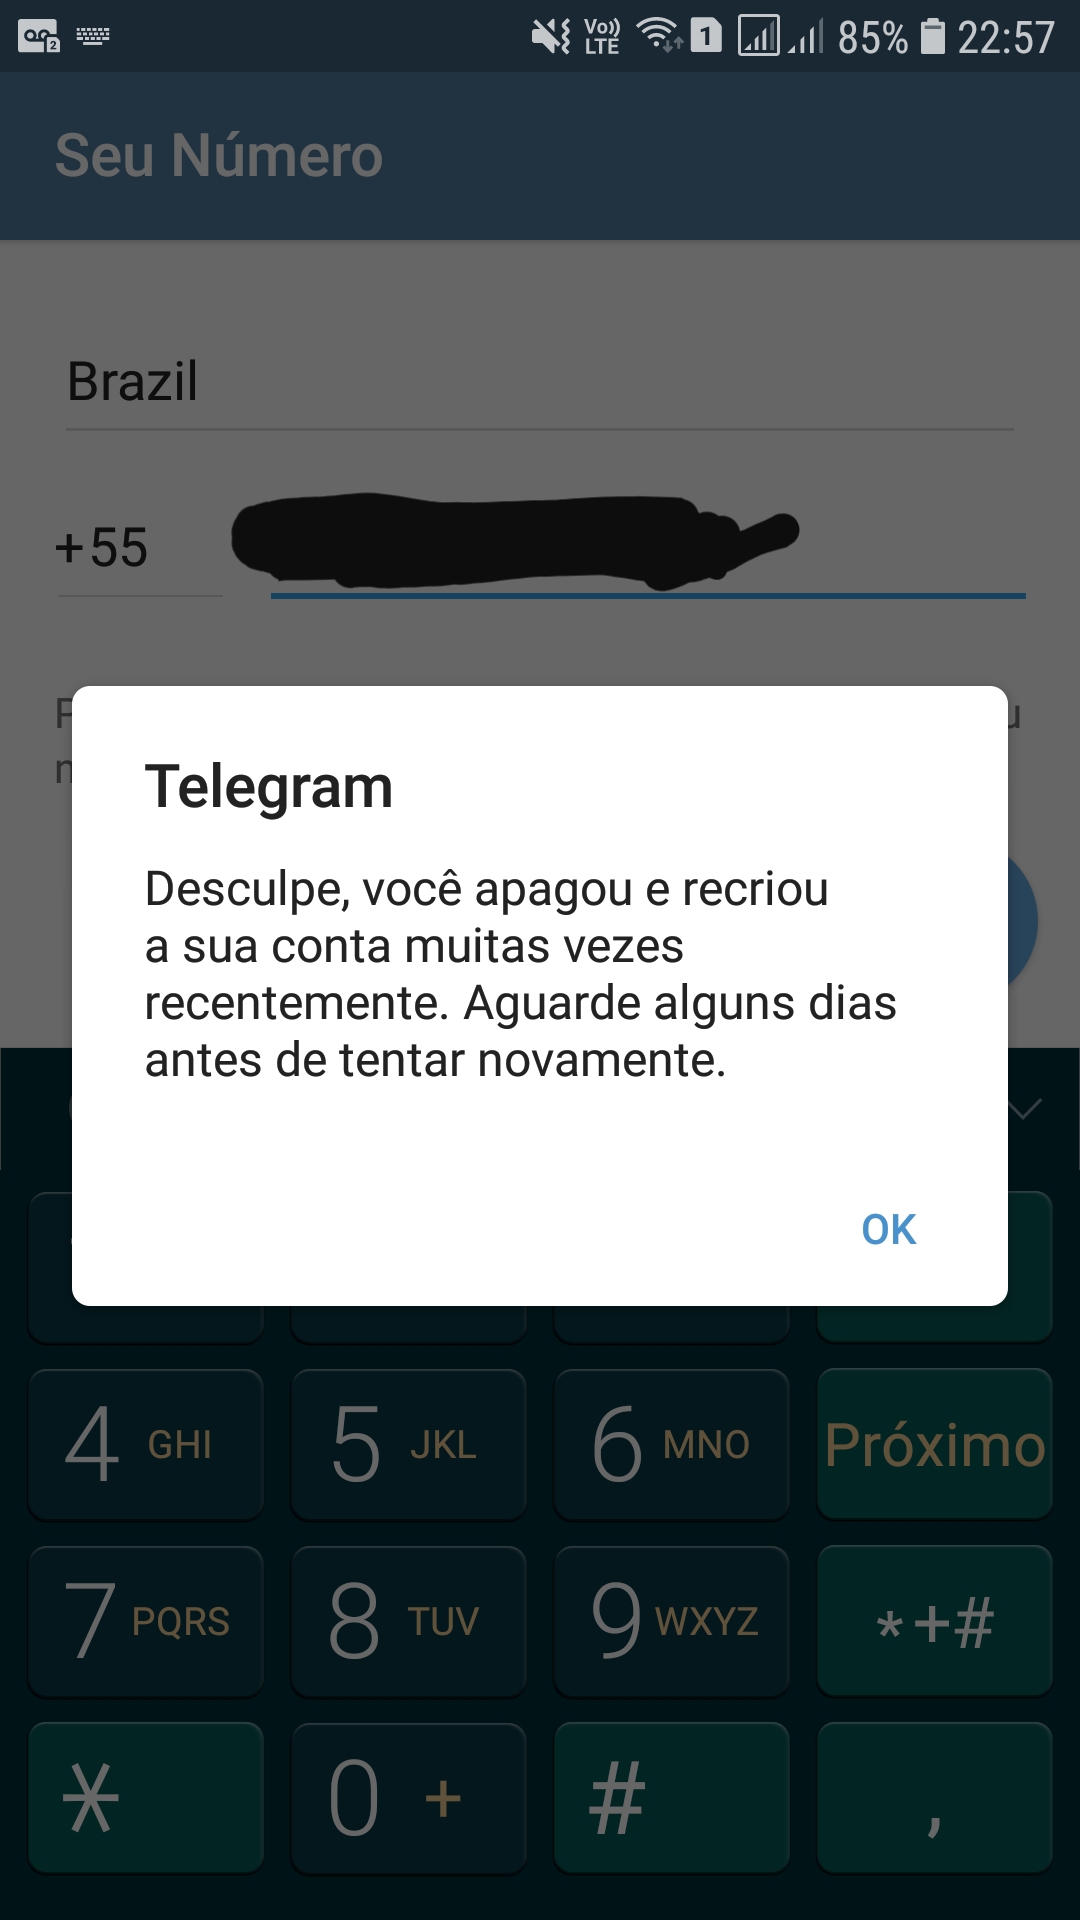 AVISO IMPORTANTE: NOVO GRUPO NO TELEGRAM! 